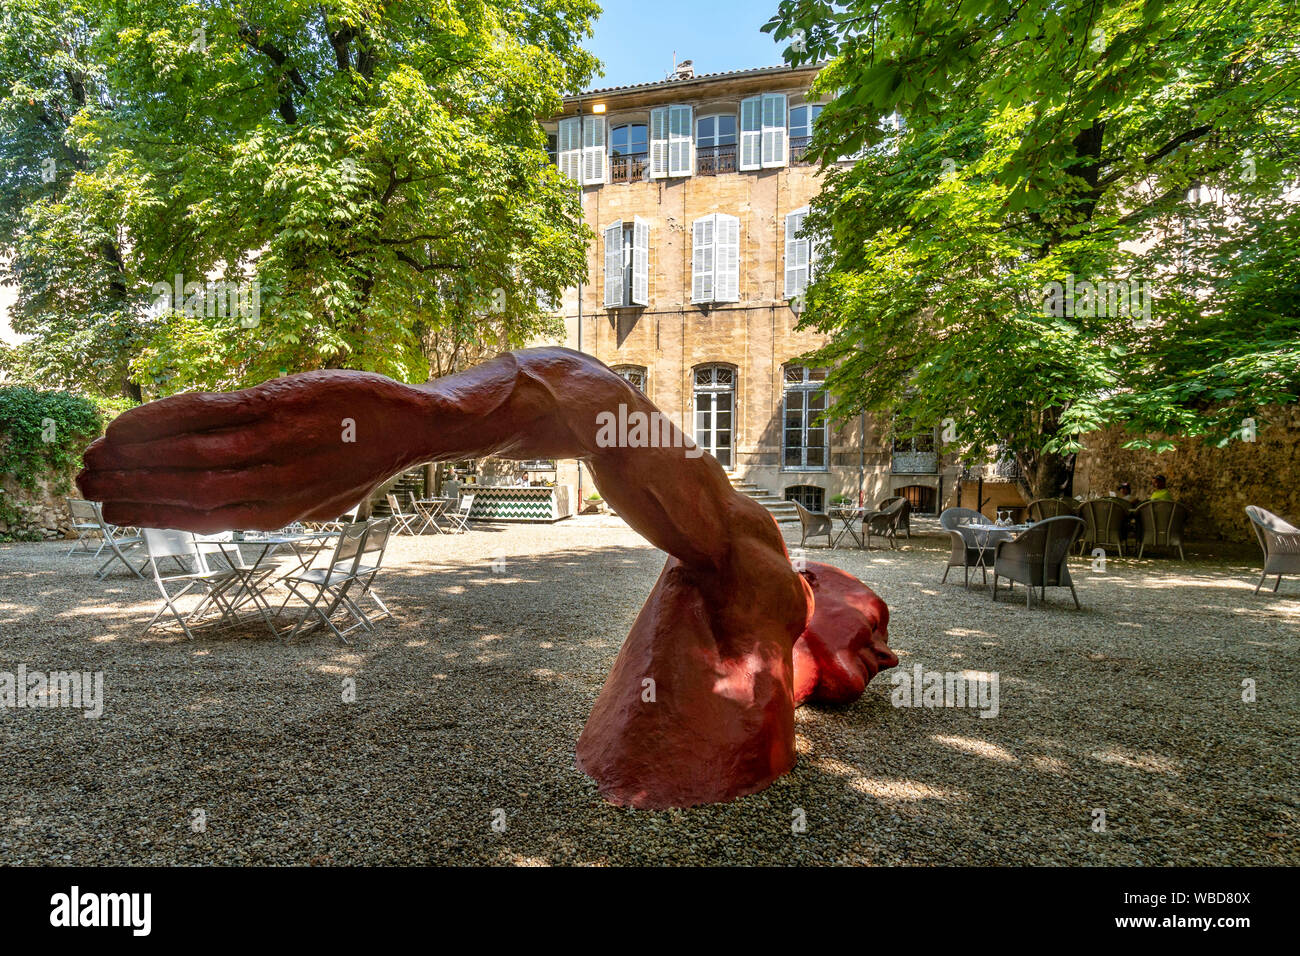 sculpture 'Nager dans le bonheur' by senegalese artist Diadji Diop , Hôtel de Gallifet in Aix en Provence, Bouche du Rhone, france Stock Photo